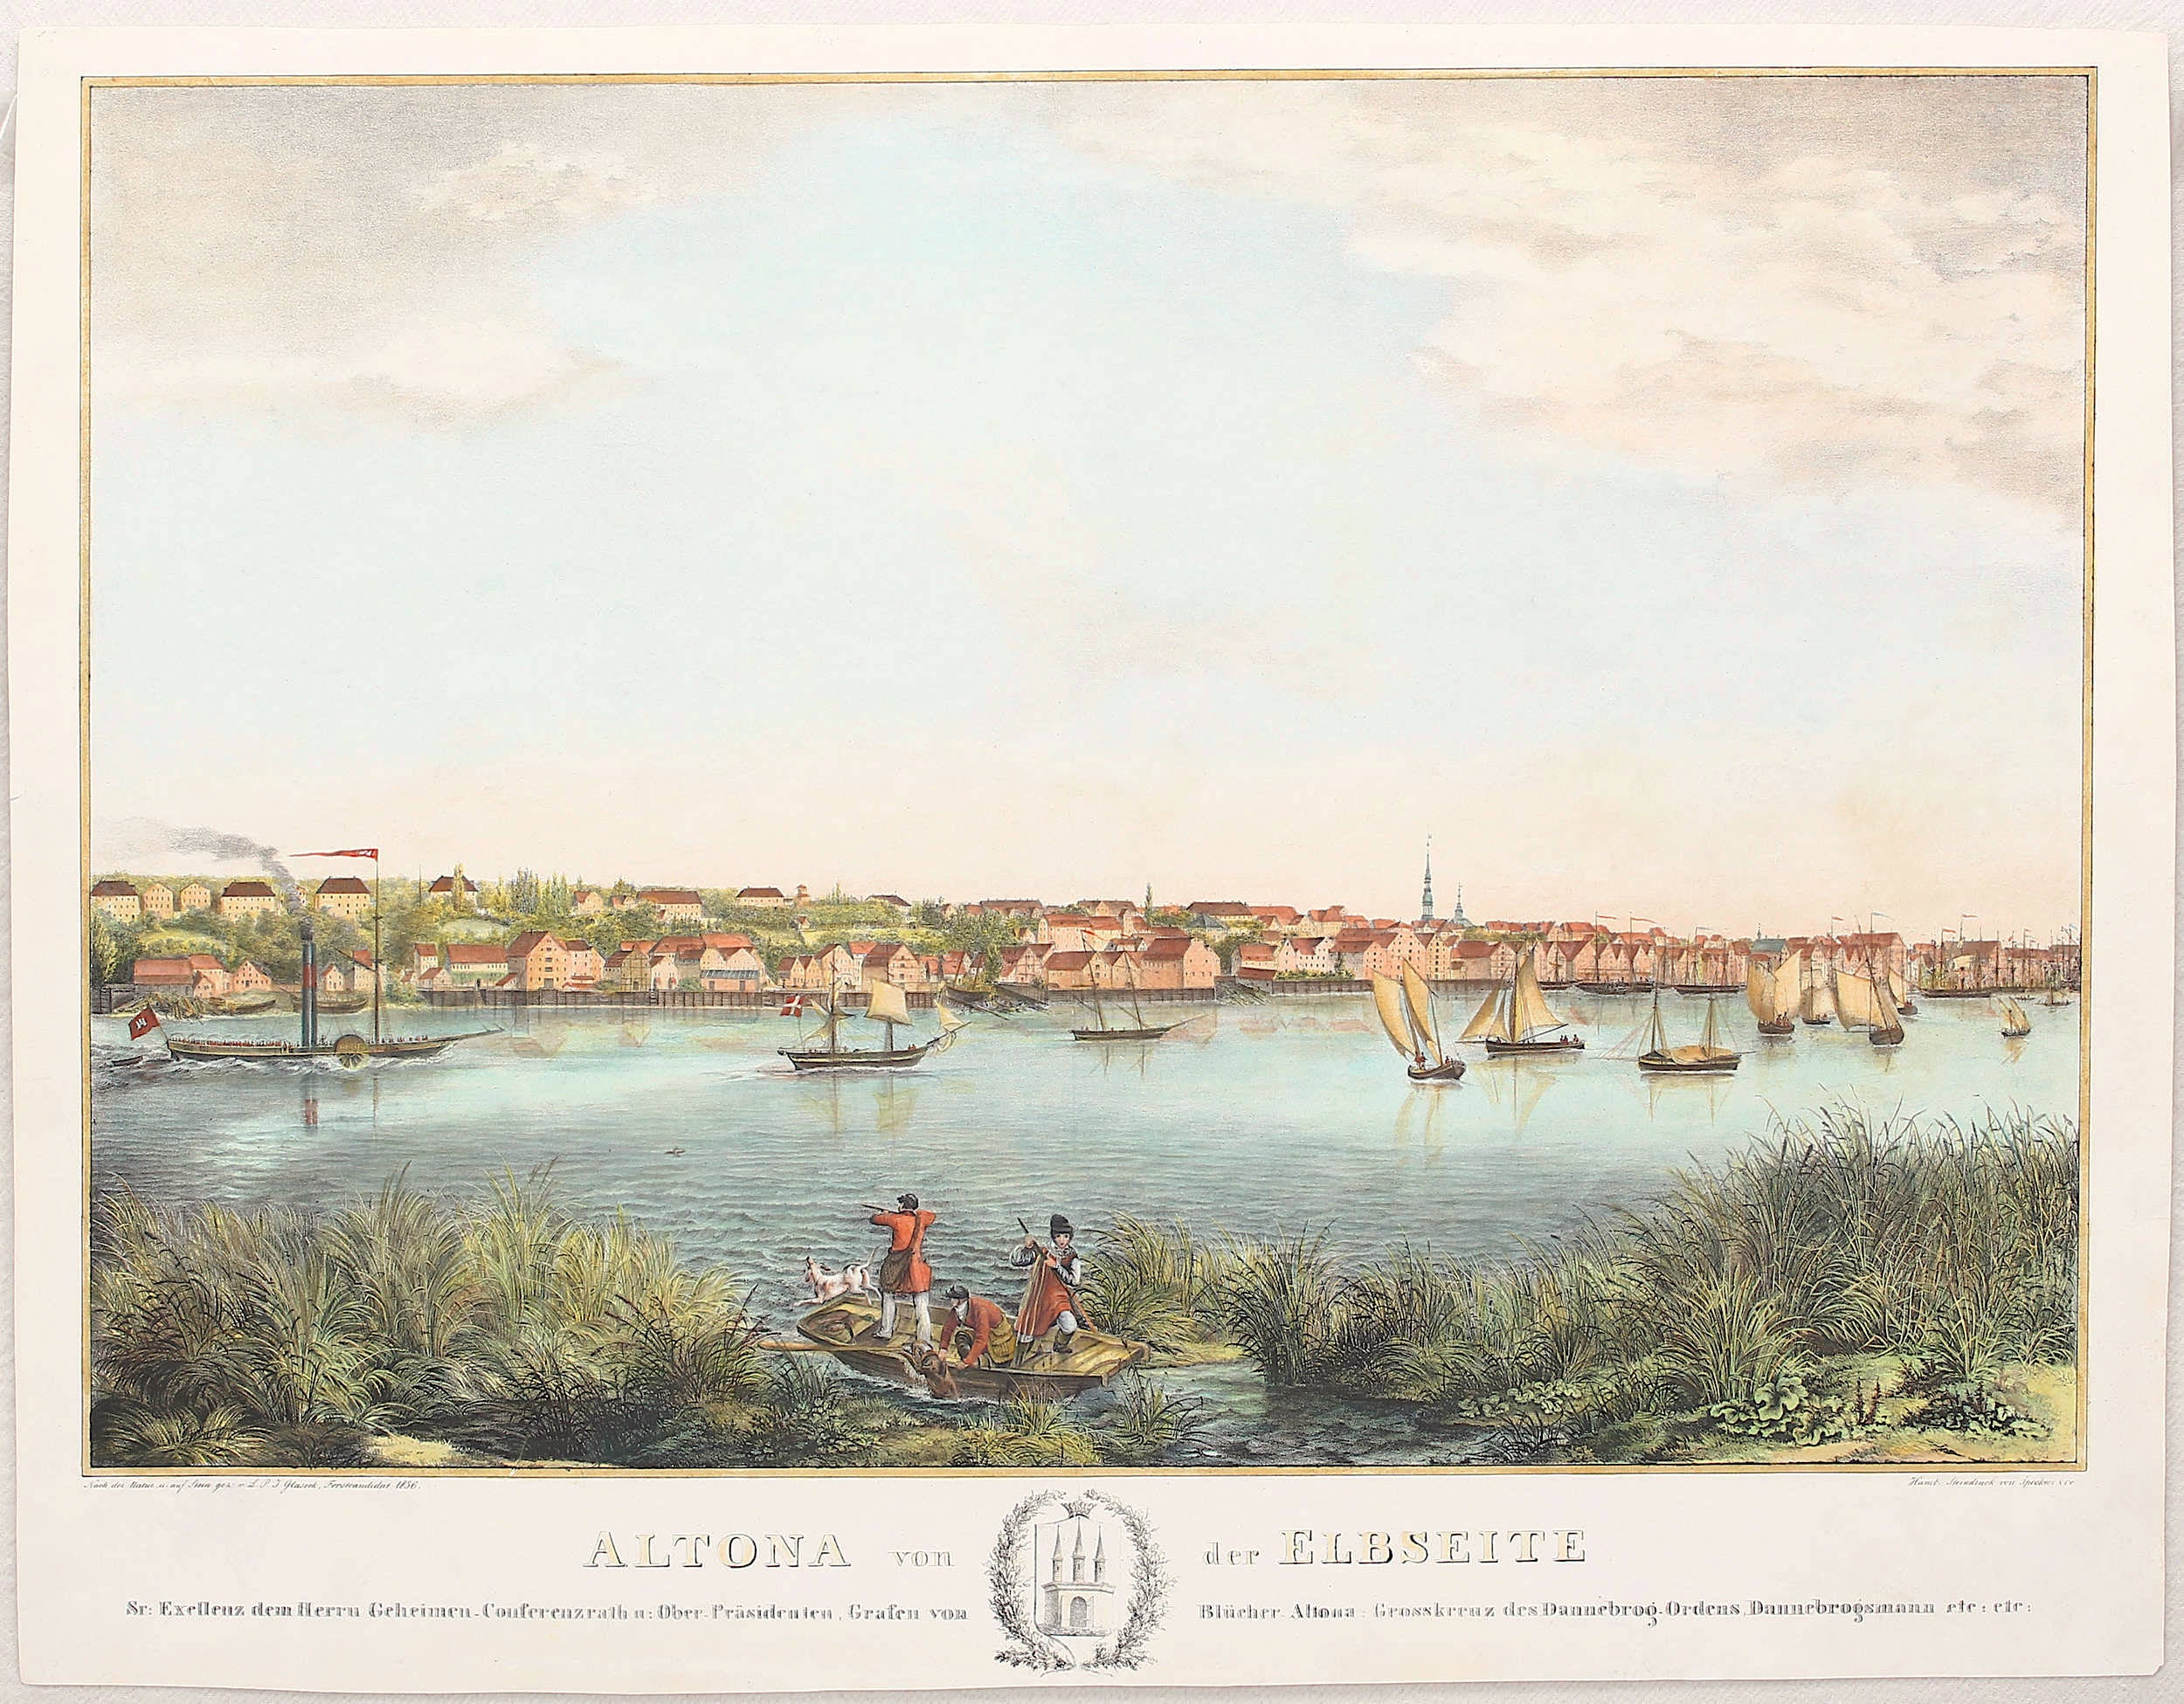 Altona / Hamburg  im Jahr 1836 von L. P. J. Glaseck bei Speckter & Co